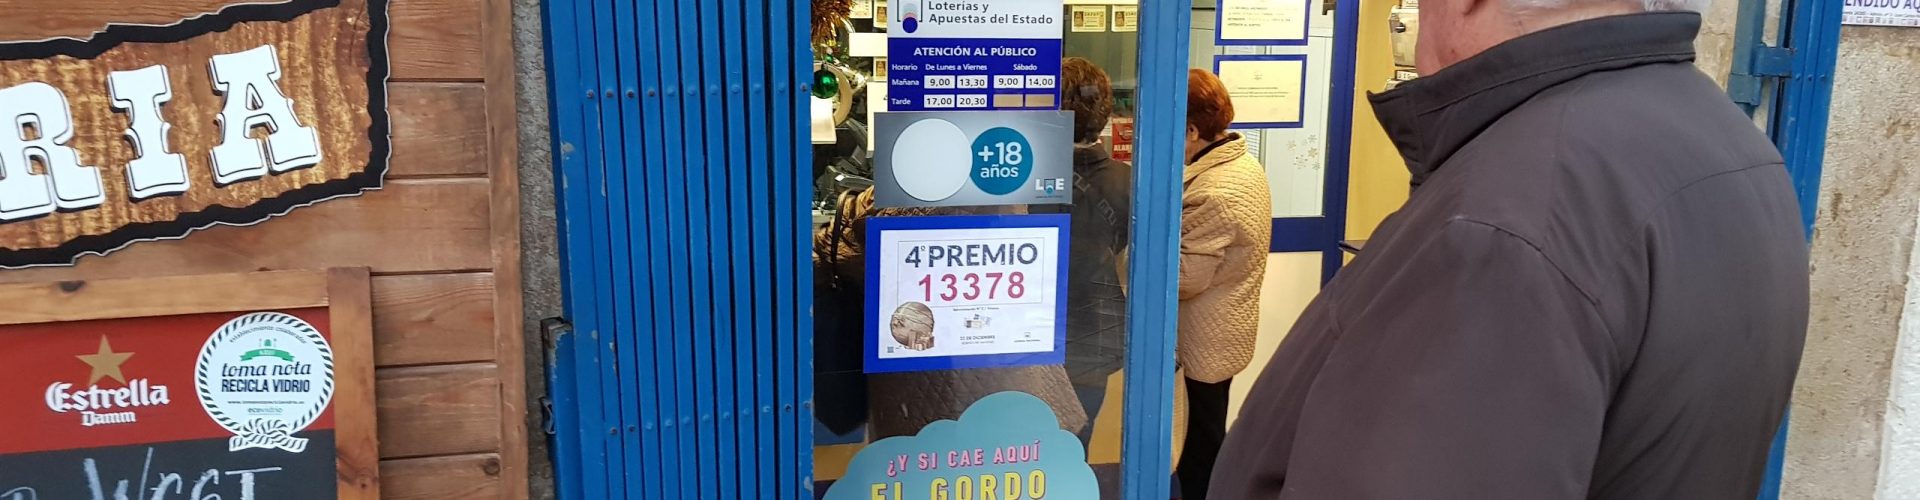 La lotería vuelve a sonreir a Vinaròs